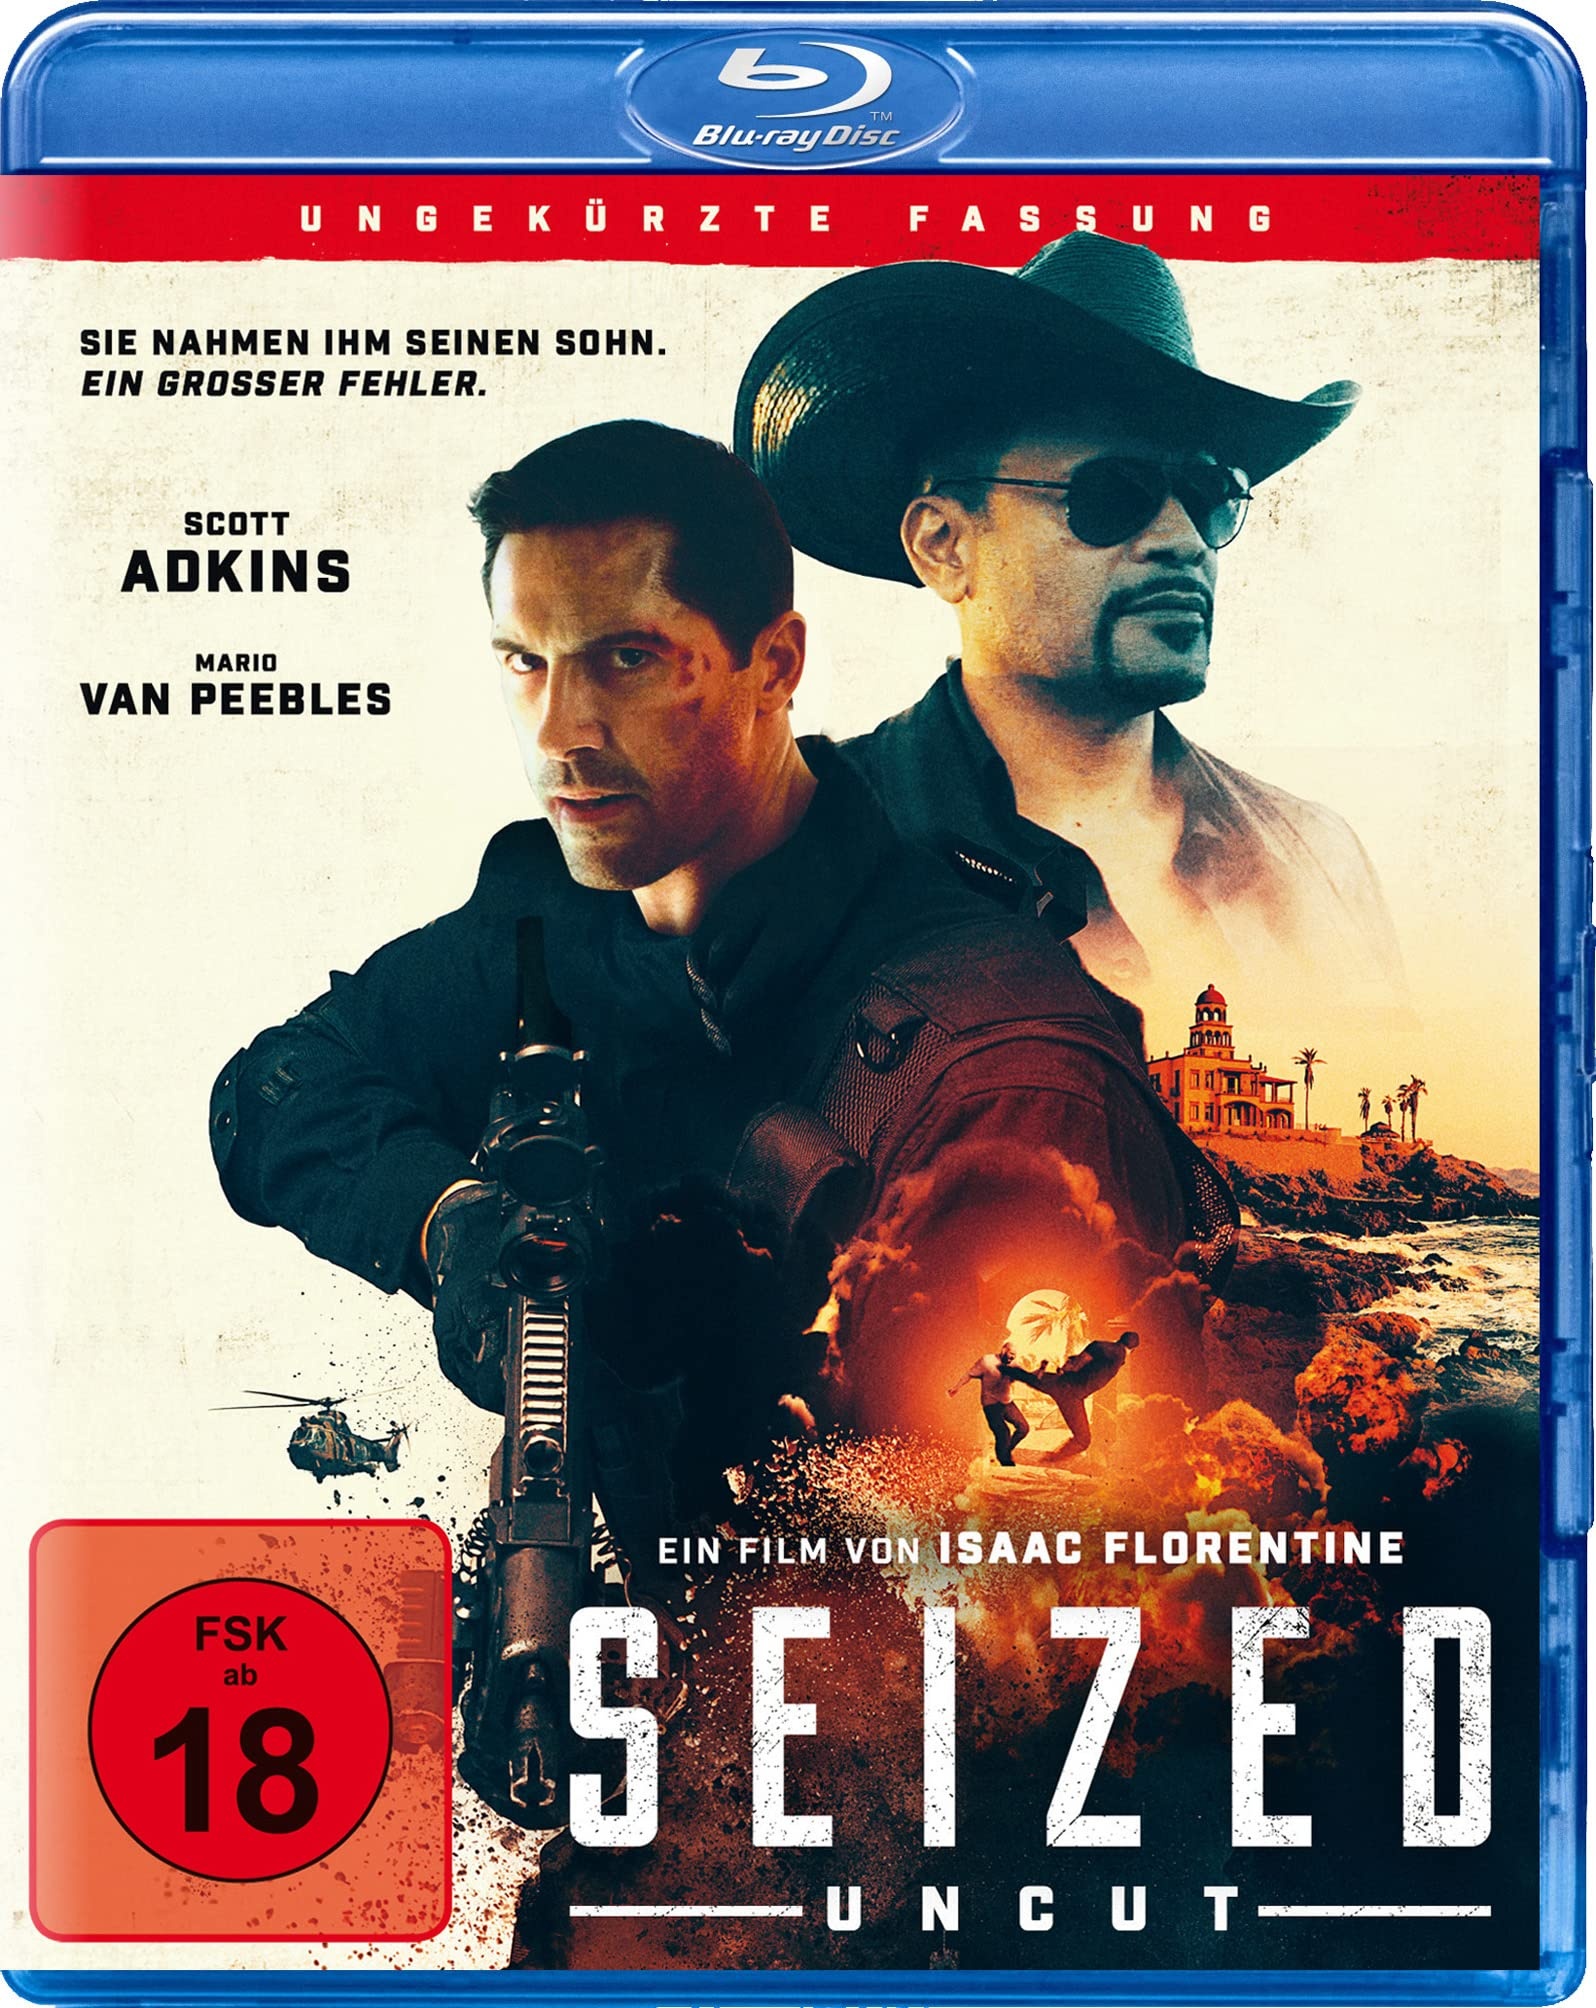 Seized Uncut (Neuauflage) [Blu-ray] (Neu differenzbesteuert)